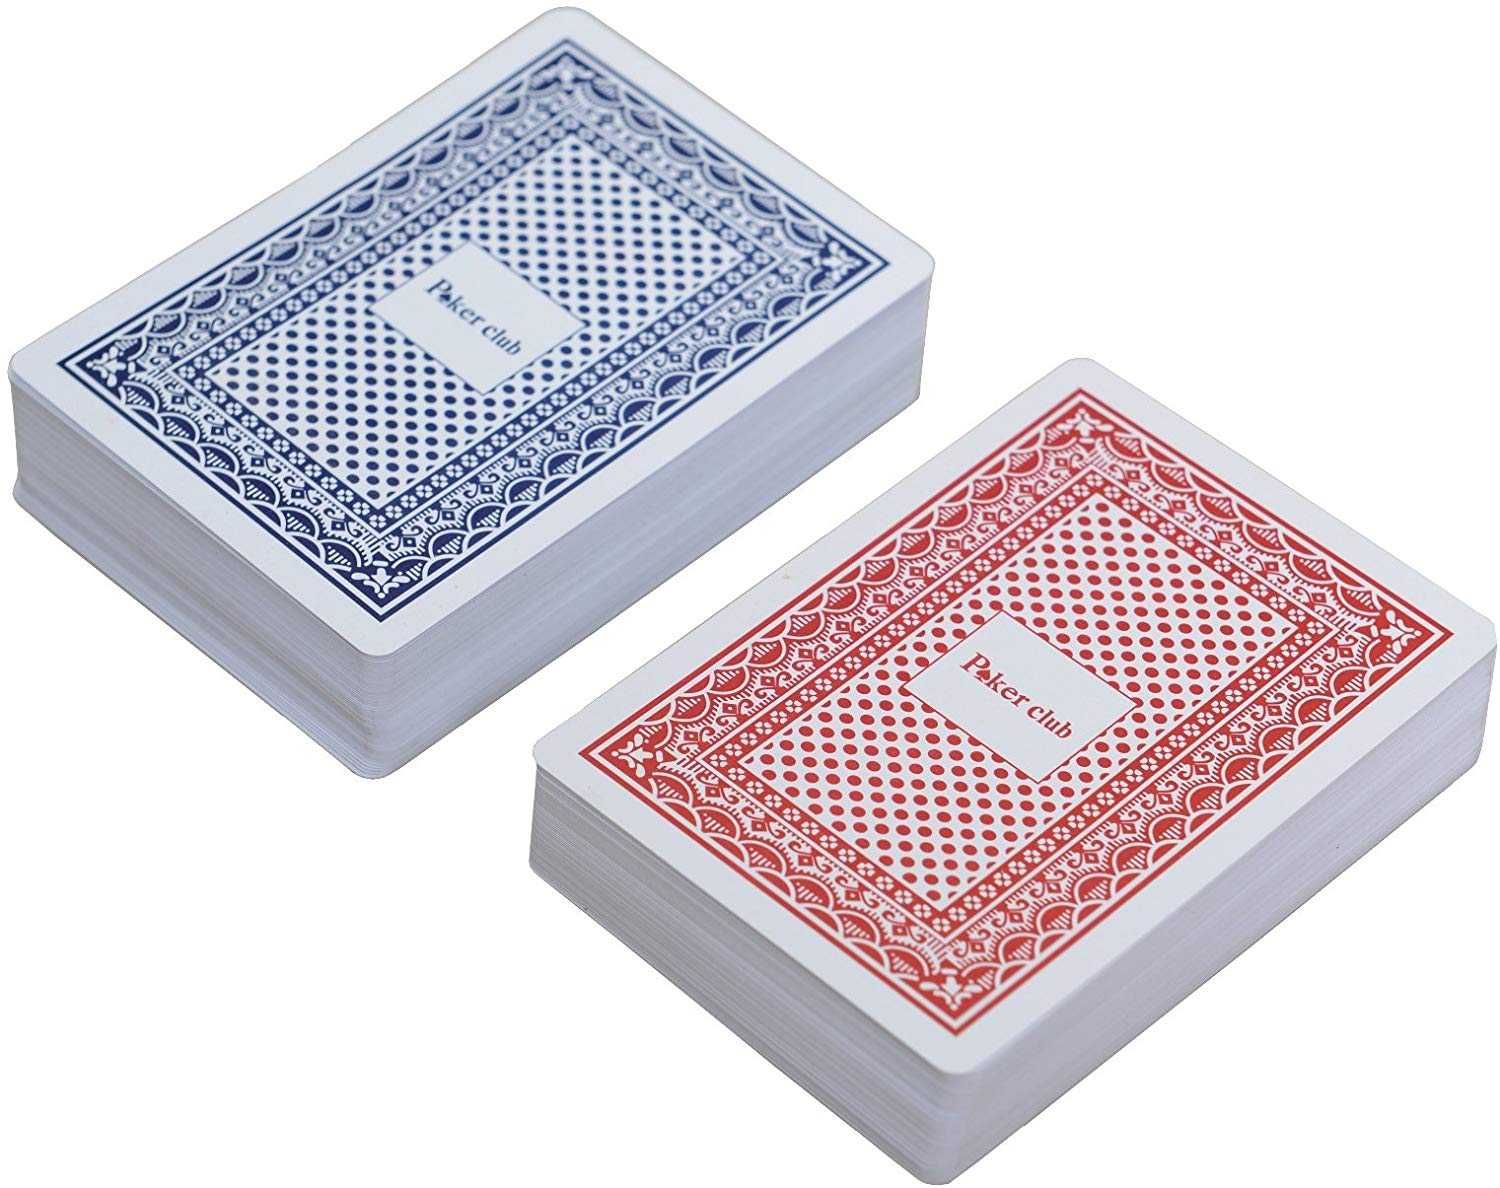 Carti de joc - Poker plastifiate profesionale - 100 % plastic. SIGILAT